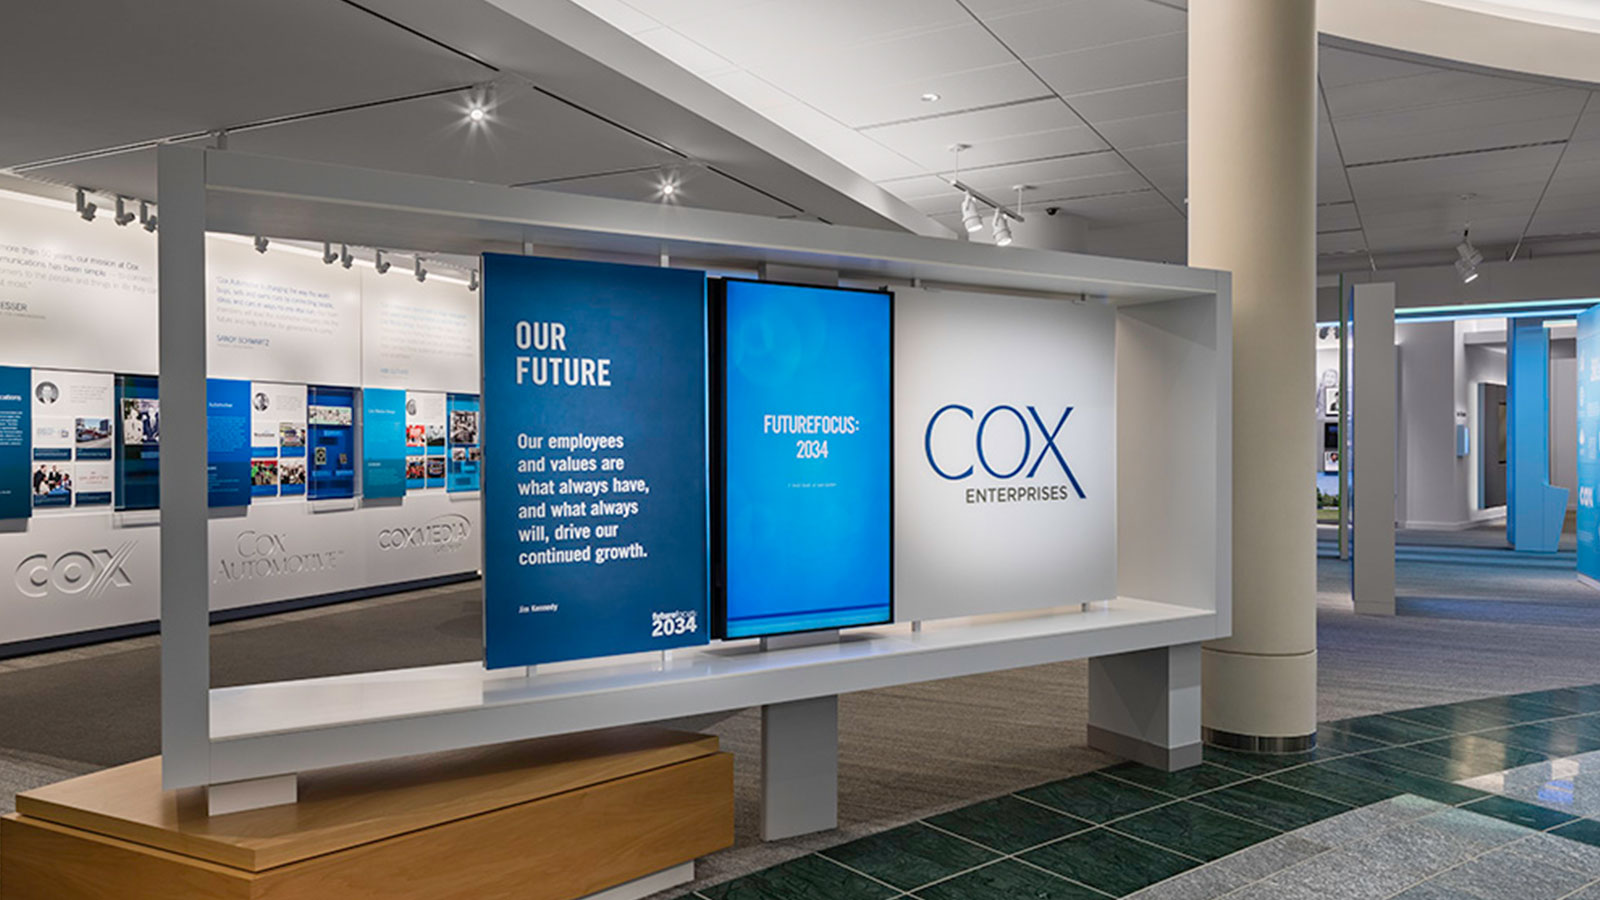 Cox Heritage Center museum, ATLANTA